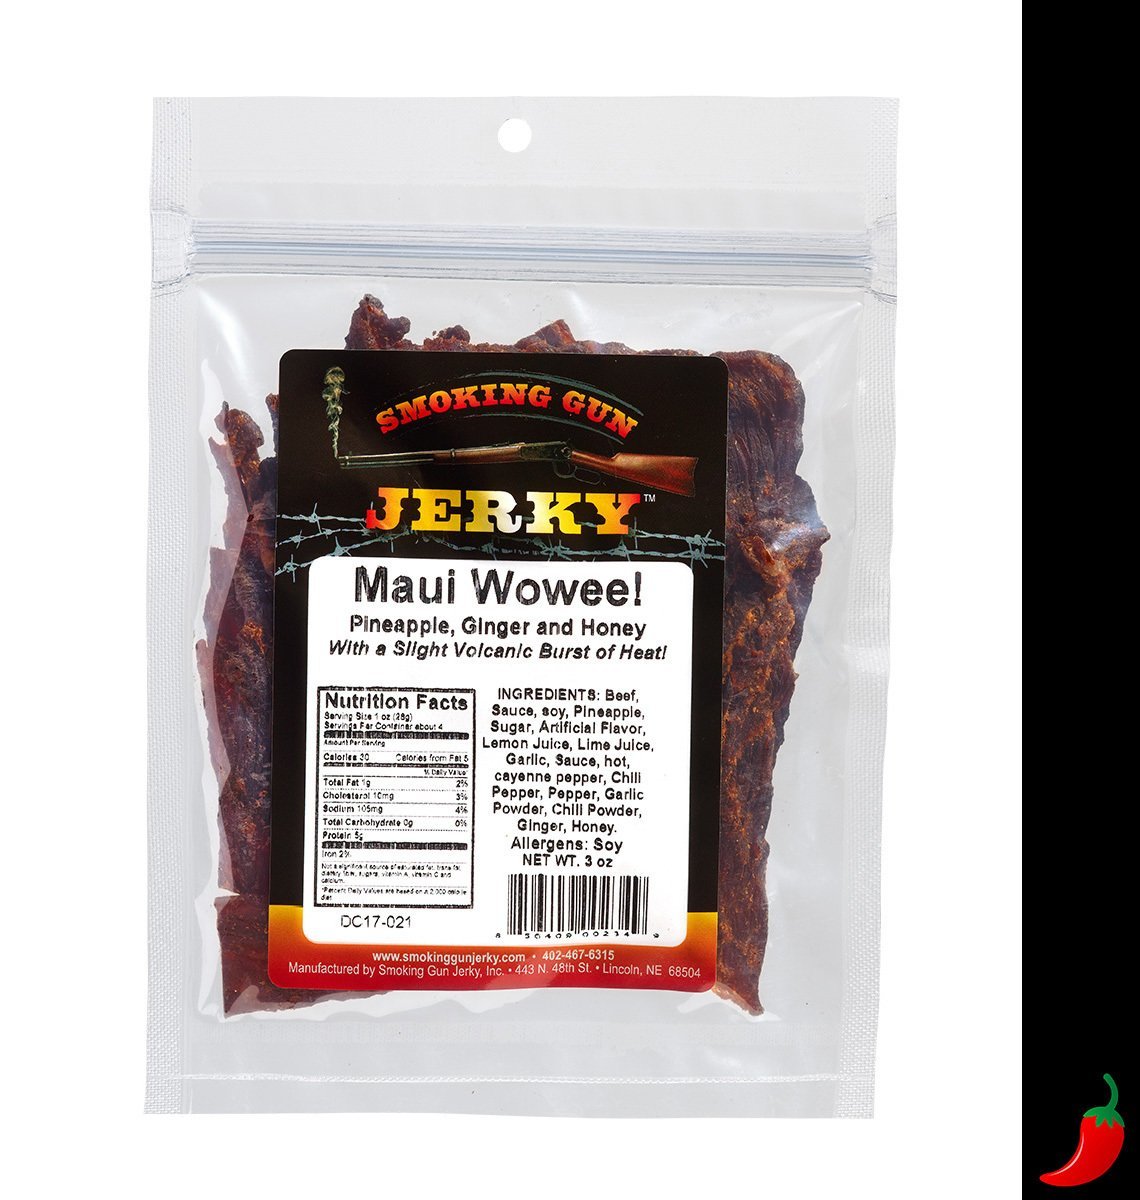 Maui Wowee! Beef Jerky, 2.75 oz. Pkg.